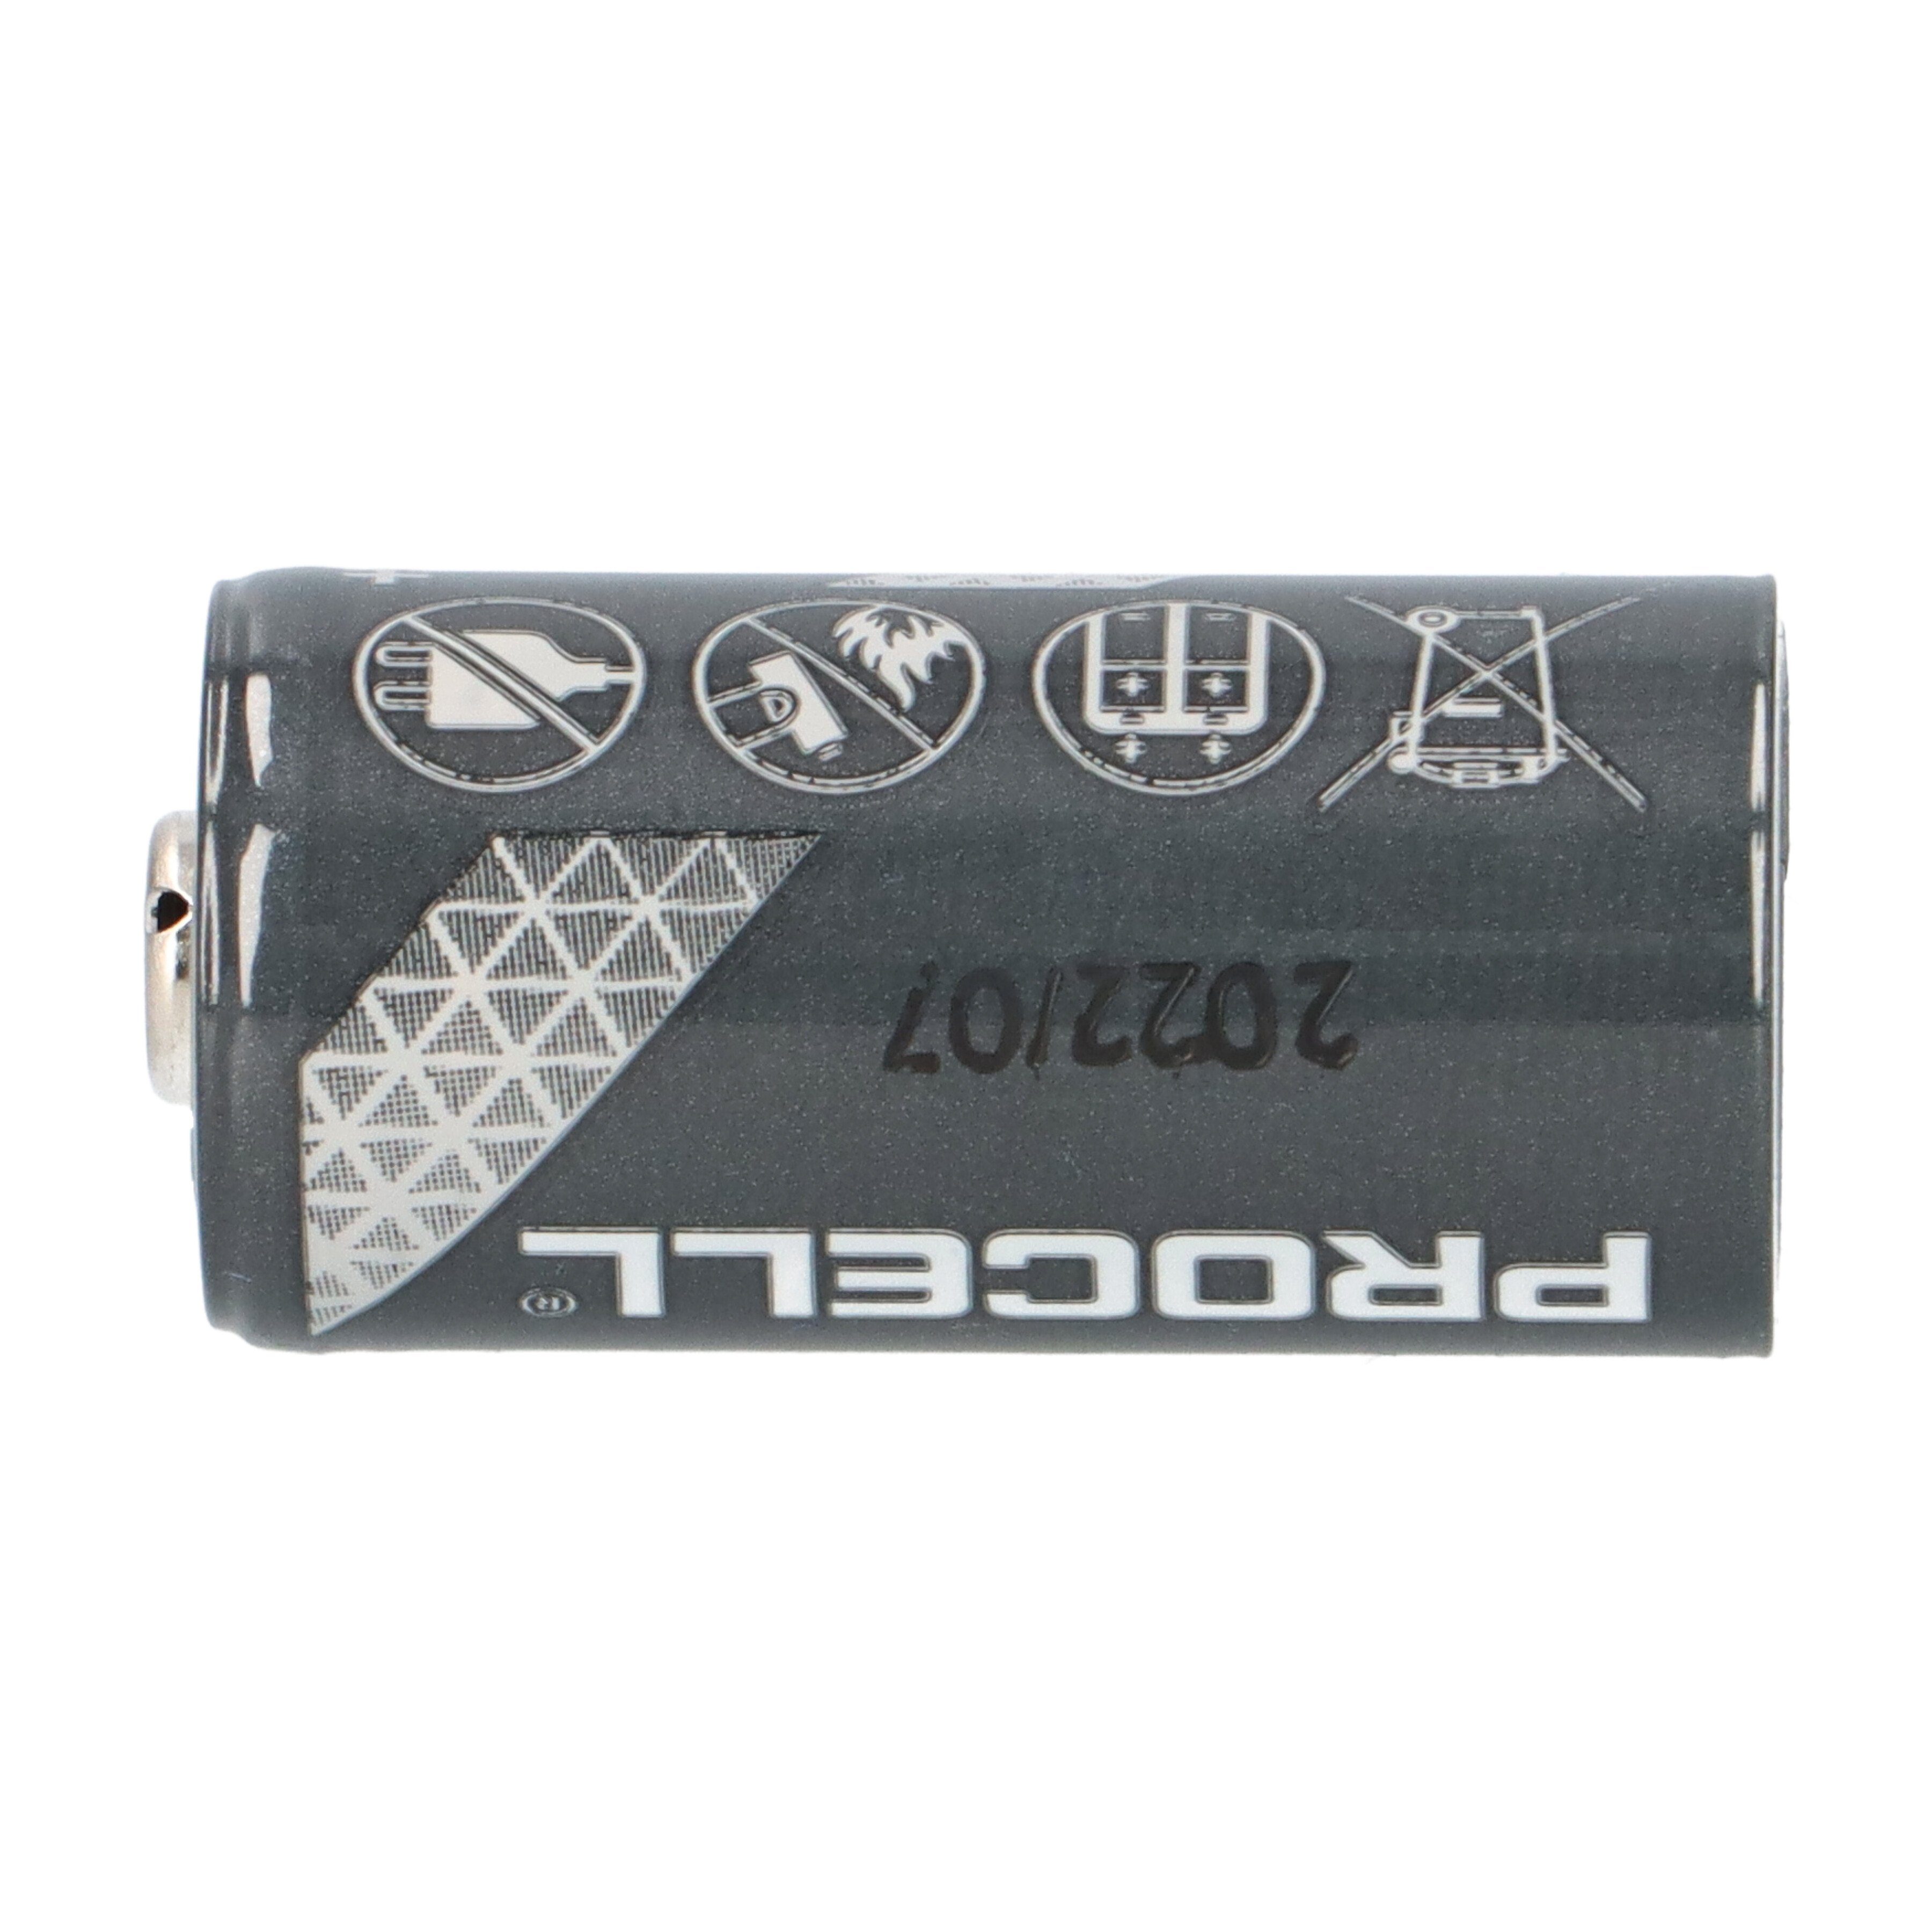 Lithium 1550mAh Procell 10er CR123A Karton 10x im Batterie Duracell 3V